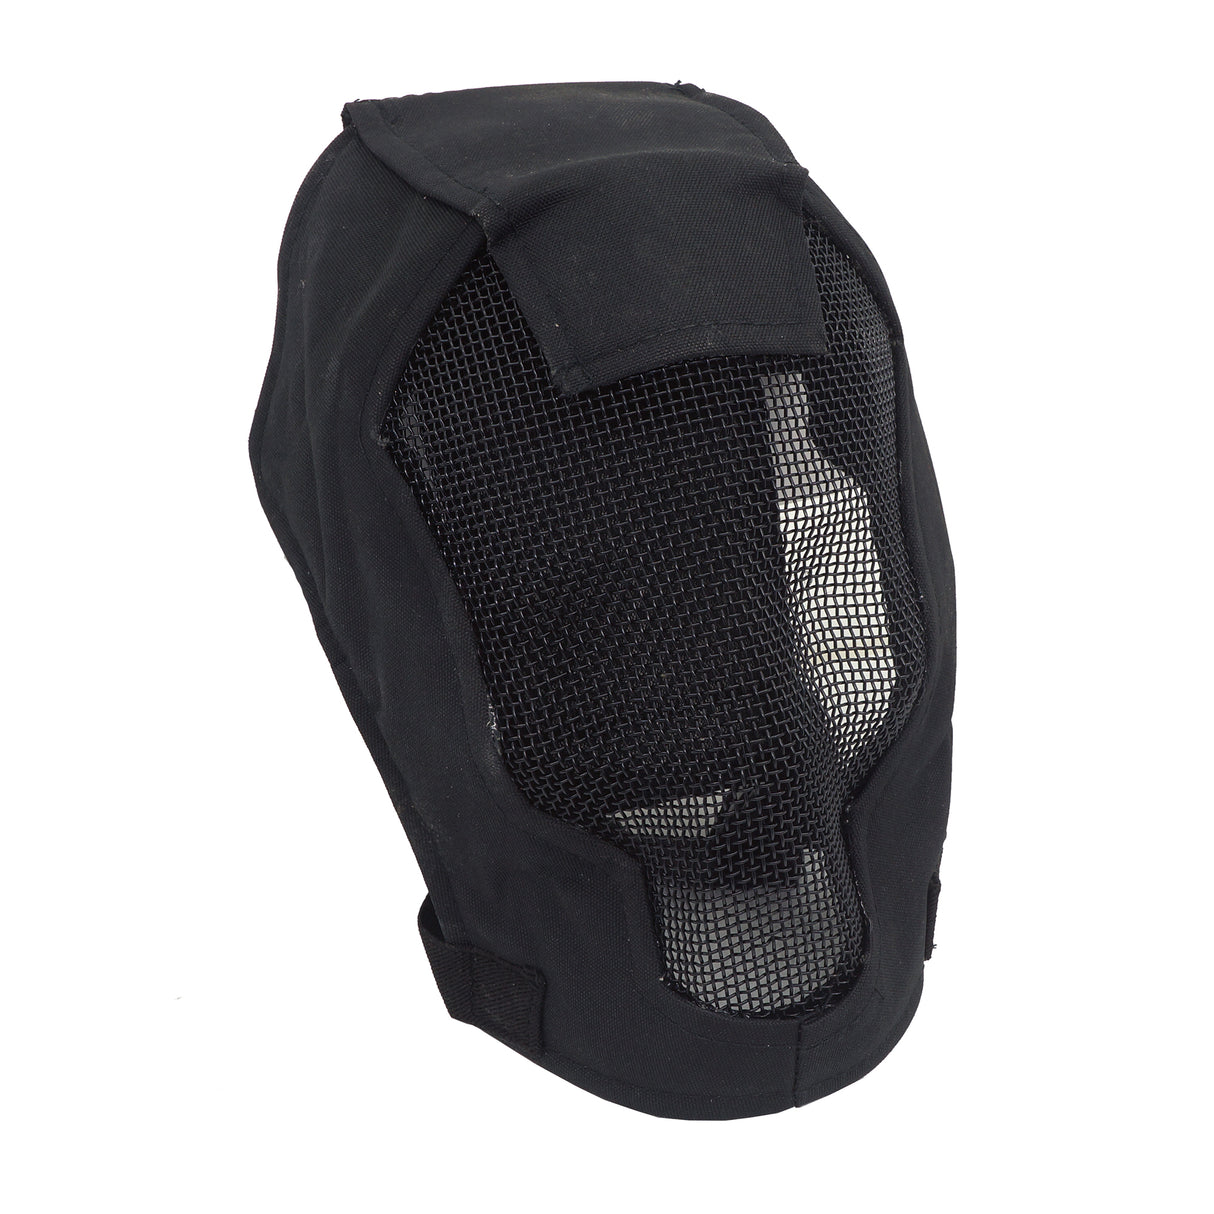 Giveaway - Steel Mesh Mask V6 Black